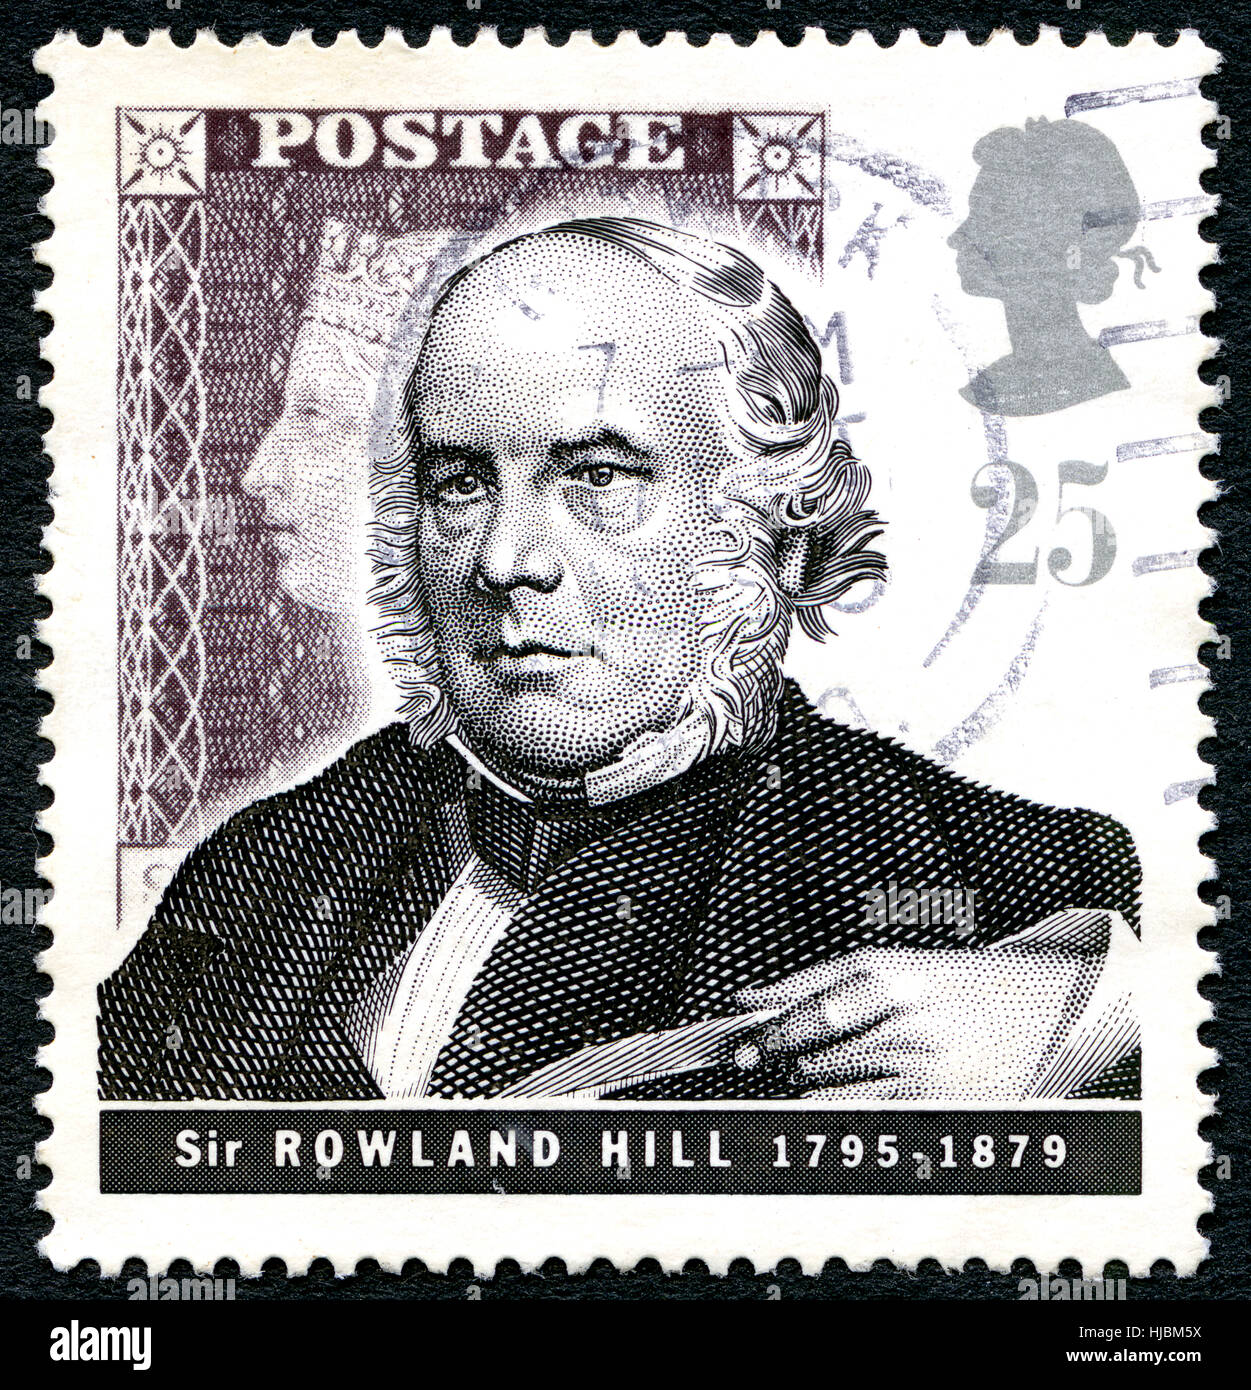 Großbritannien - ca. 1979: Eine gebrauchte Briefmarke aus dem Vereinigten Königreich, zeigt ein Porträt des Englisch-Lehrer, Erfinder und Sozialreformer Sir Rowland Hill, Stockfoto